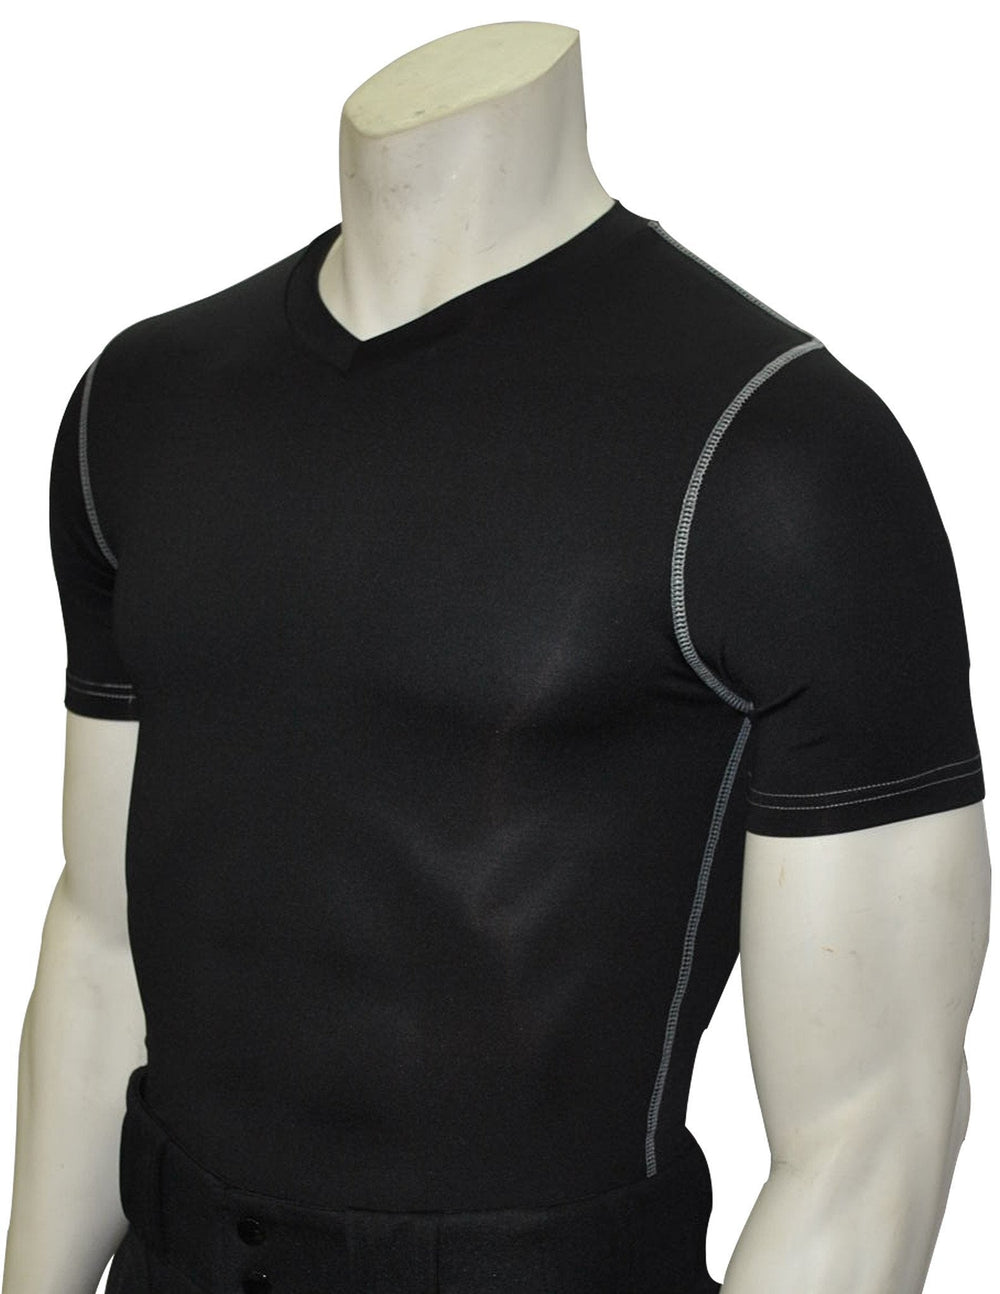 Smitty Black Compression Short Sleeve V-Neck Shirt